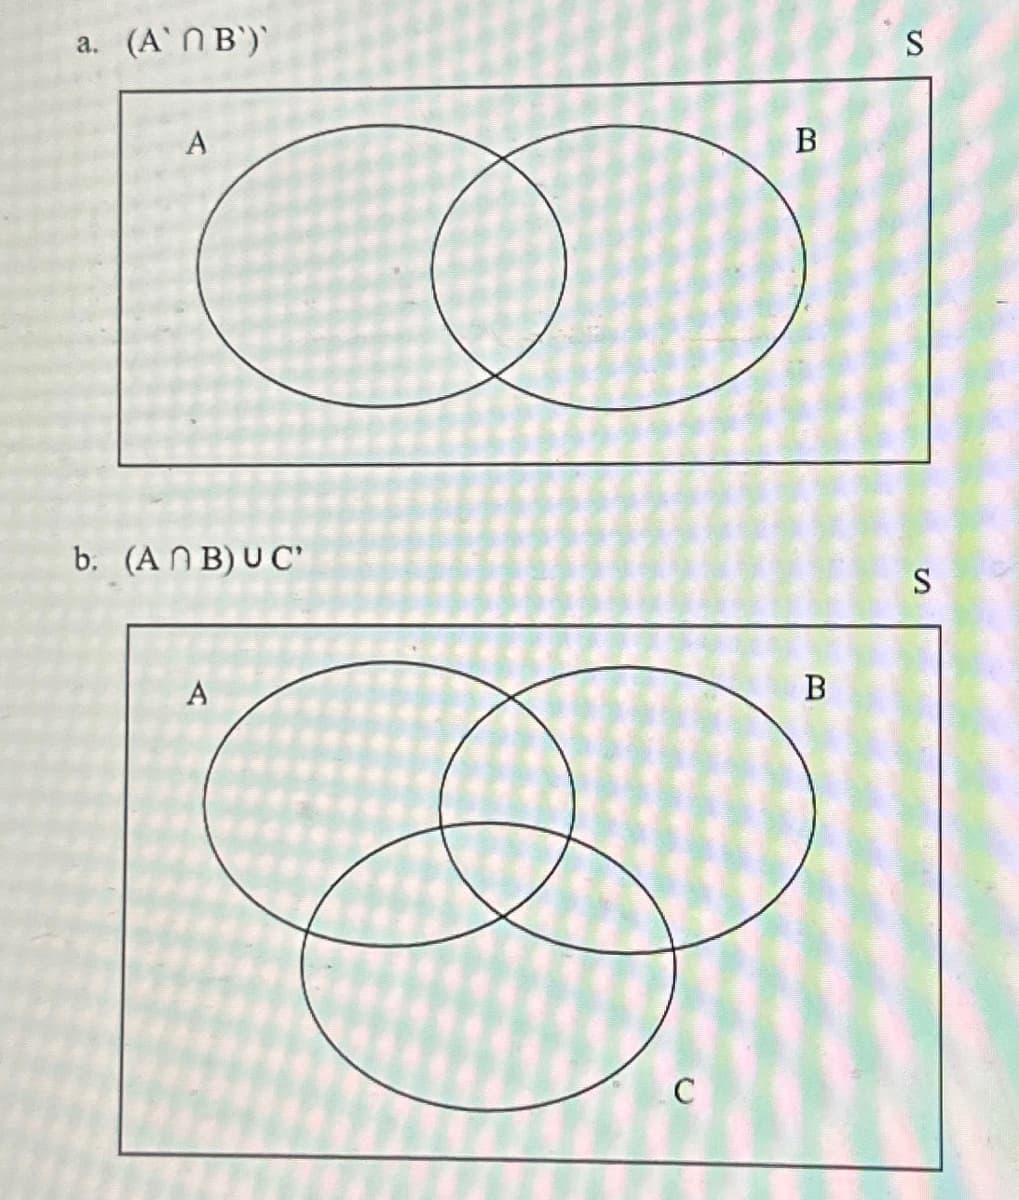 a. (A`N B`)`
A
b. (ANB) UC'
A
C
B
B
S
S